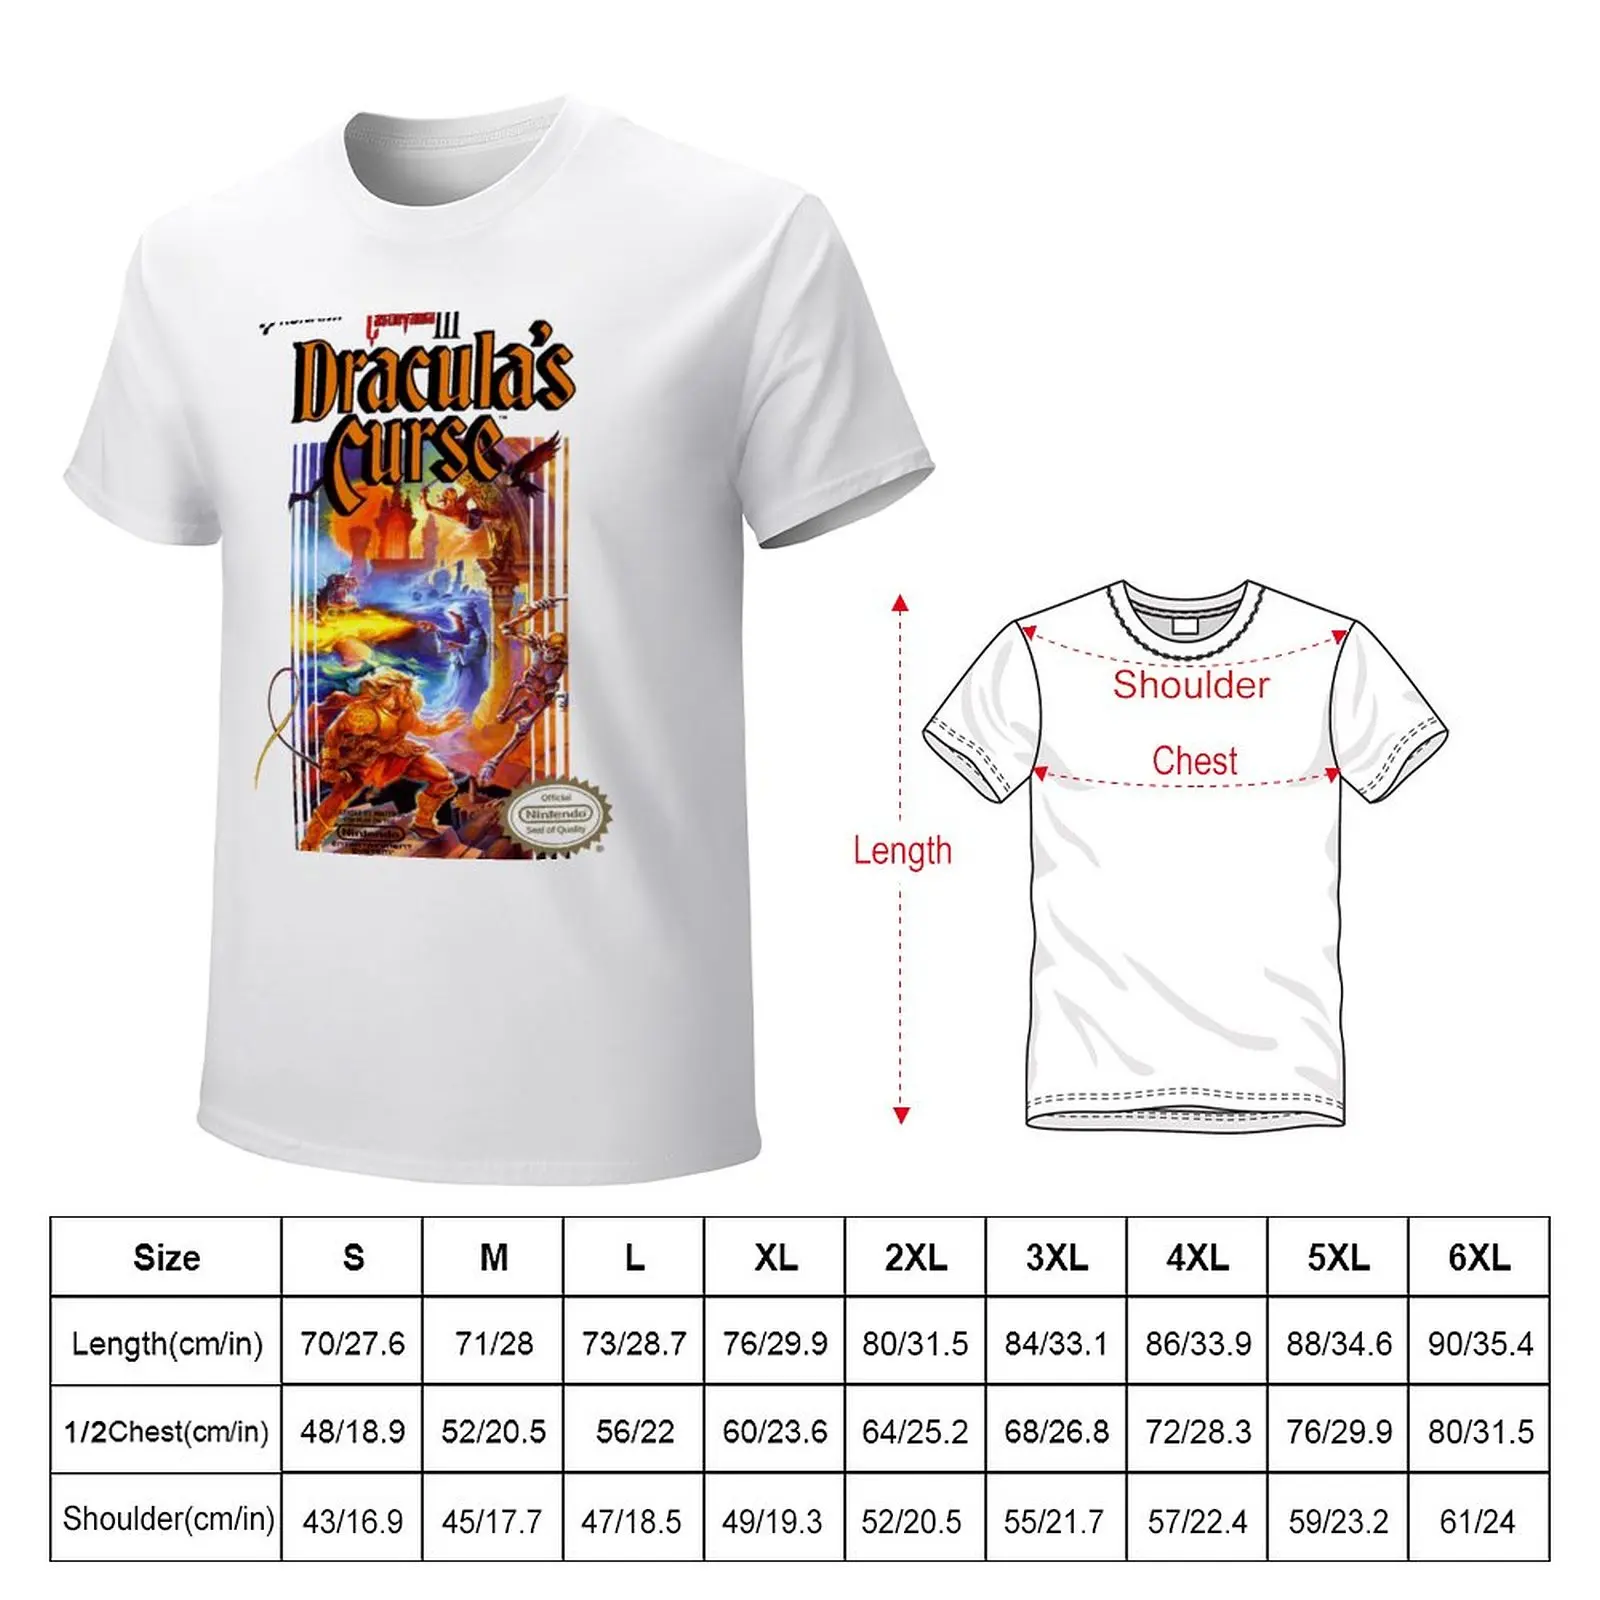 Футболка Castlevania 3, короткая эстетичная одежда, забавная футболка, мужские футболки большого и высокого размера. Изображение 3